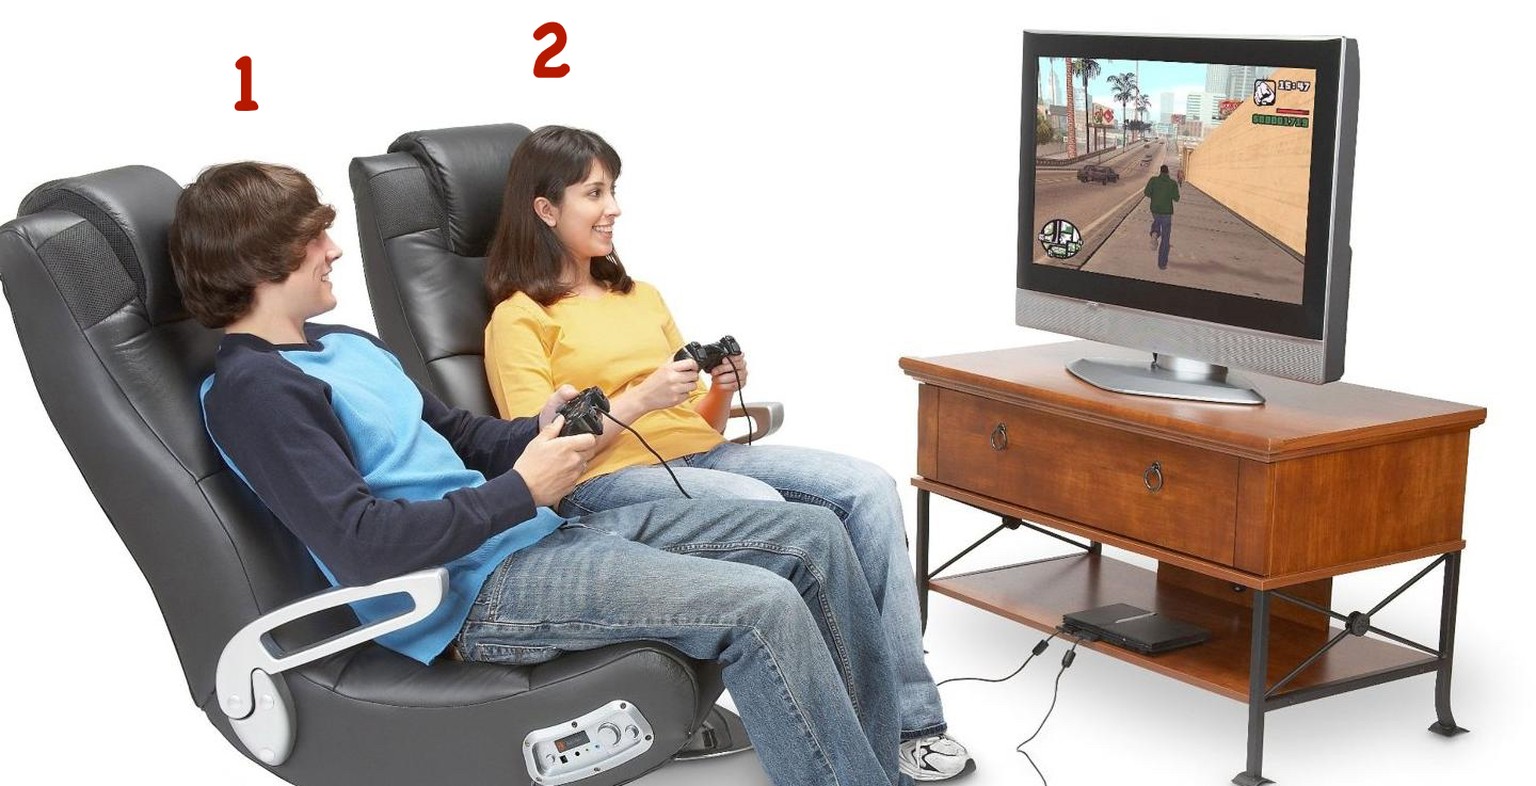 «GTA» war auf der PS2 bekanntlich ein Single-Player-Game. Wie können die beiden das also zusammen spielen?